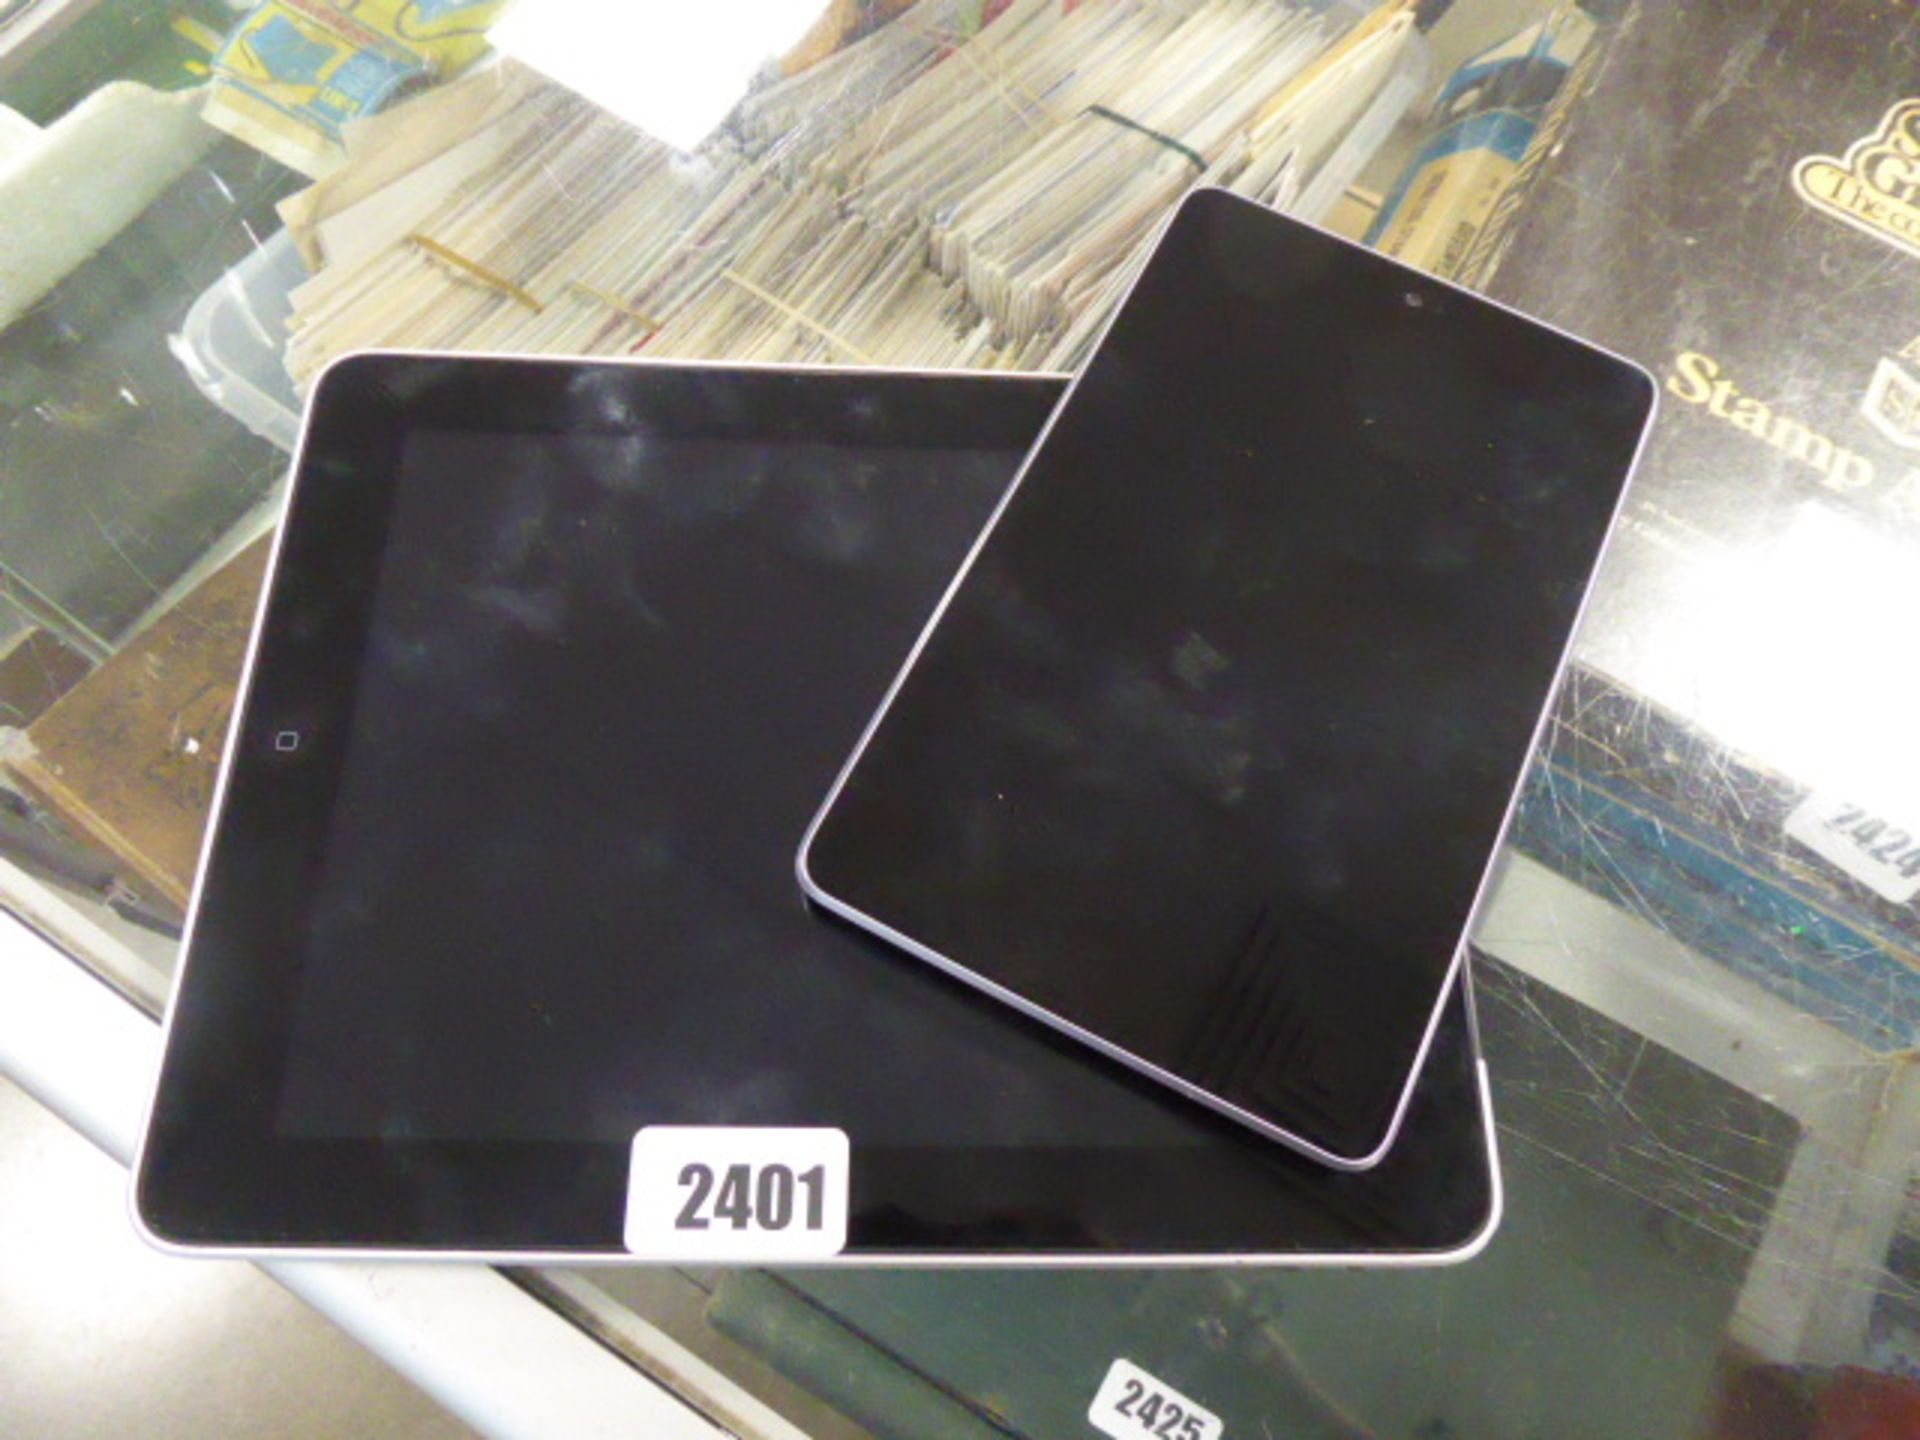 Apple iPad 1st gen and Google Nexus tablet